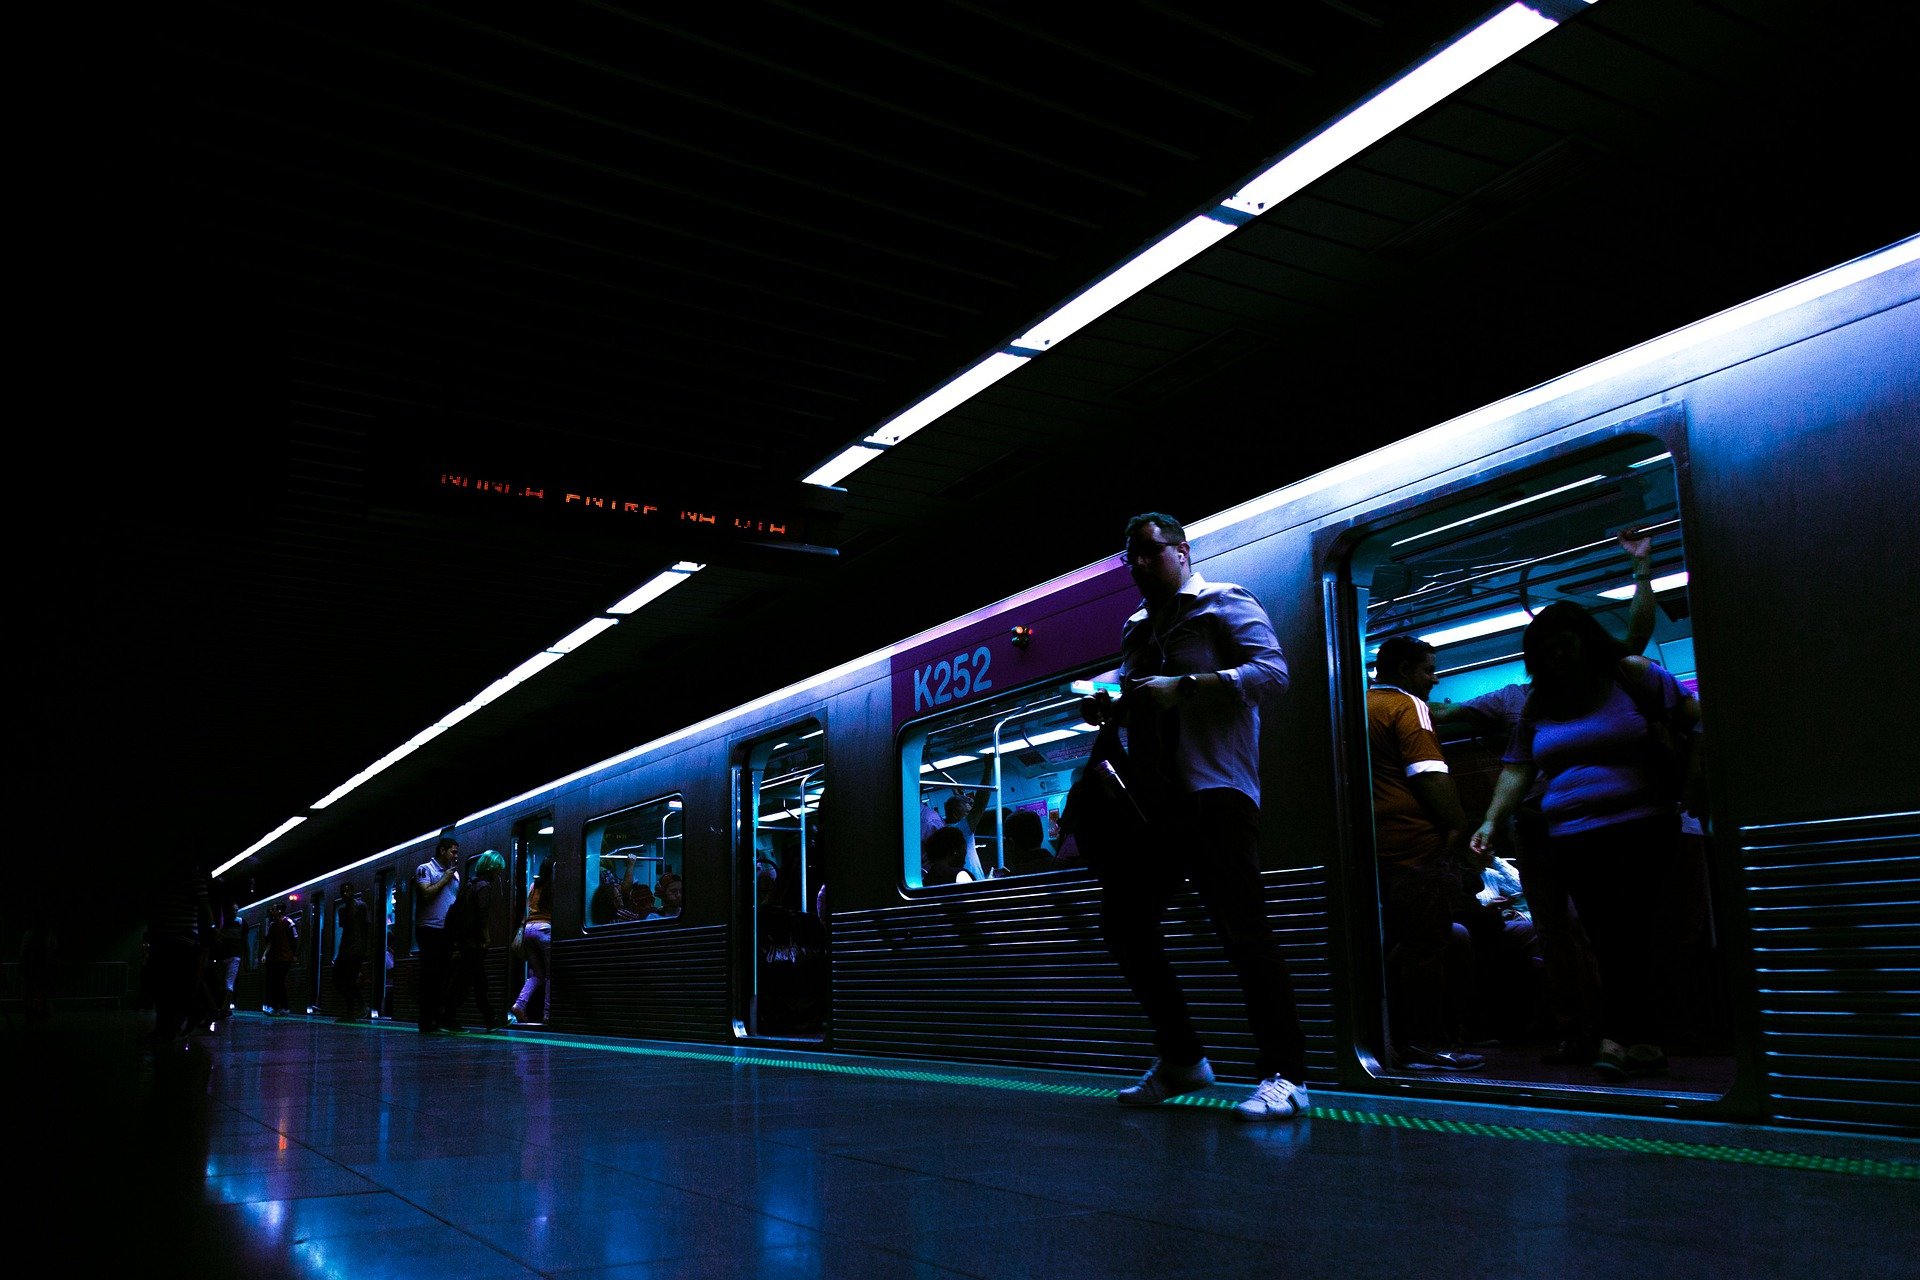 Station de métro | Photo : Pexel